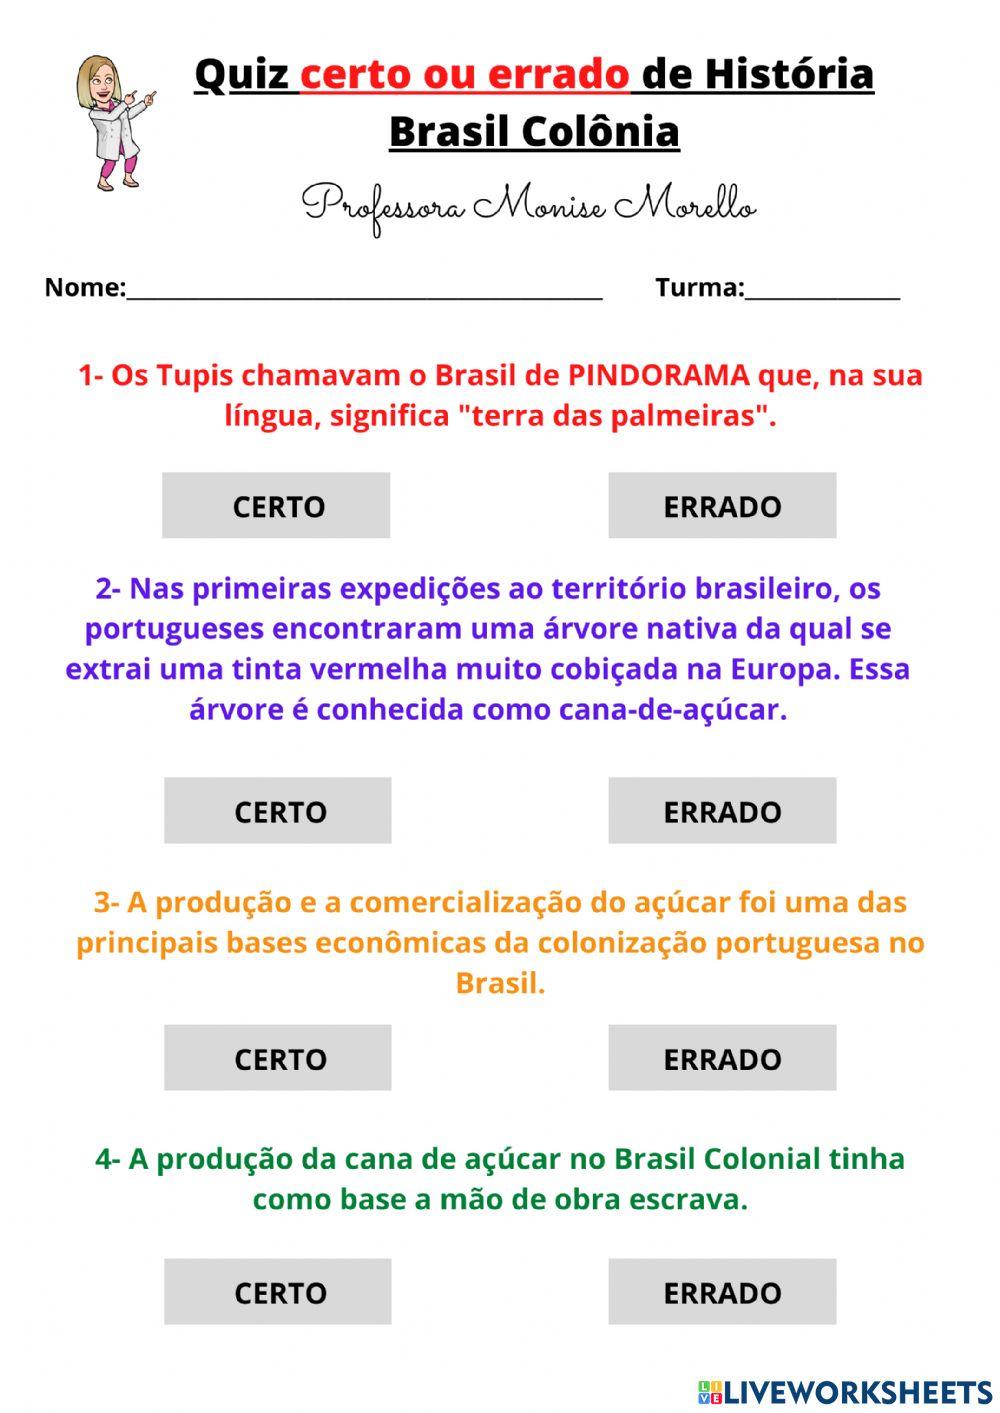 Quiz História do Brasil e do Mundo - 10 Perguntas selecionadas